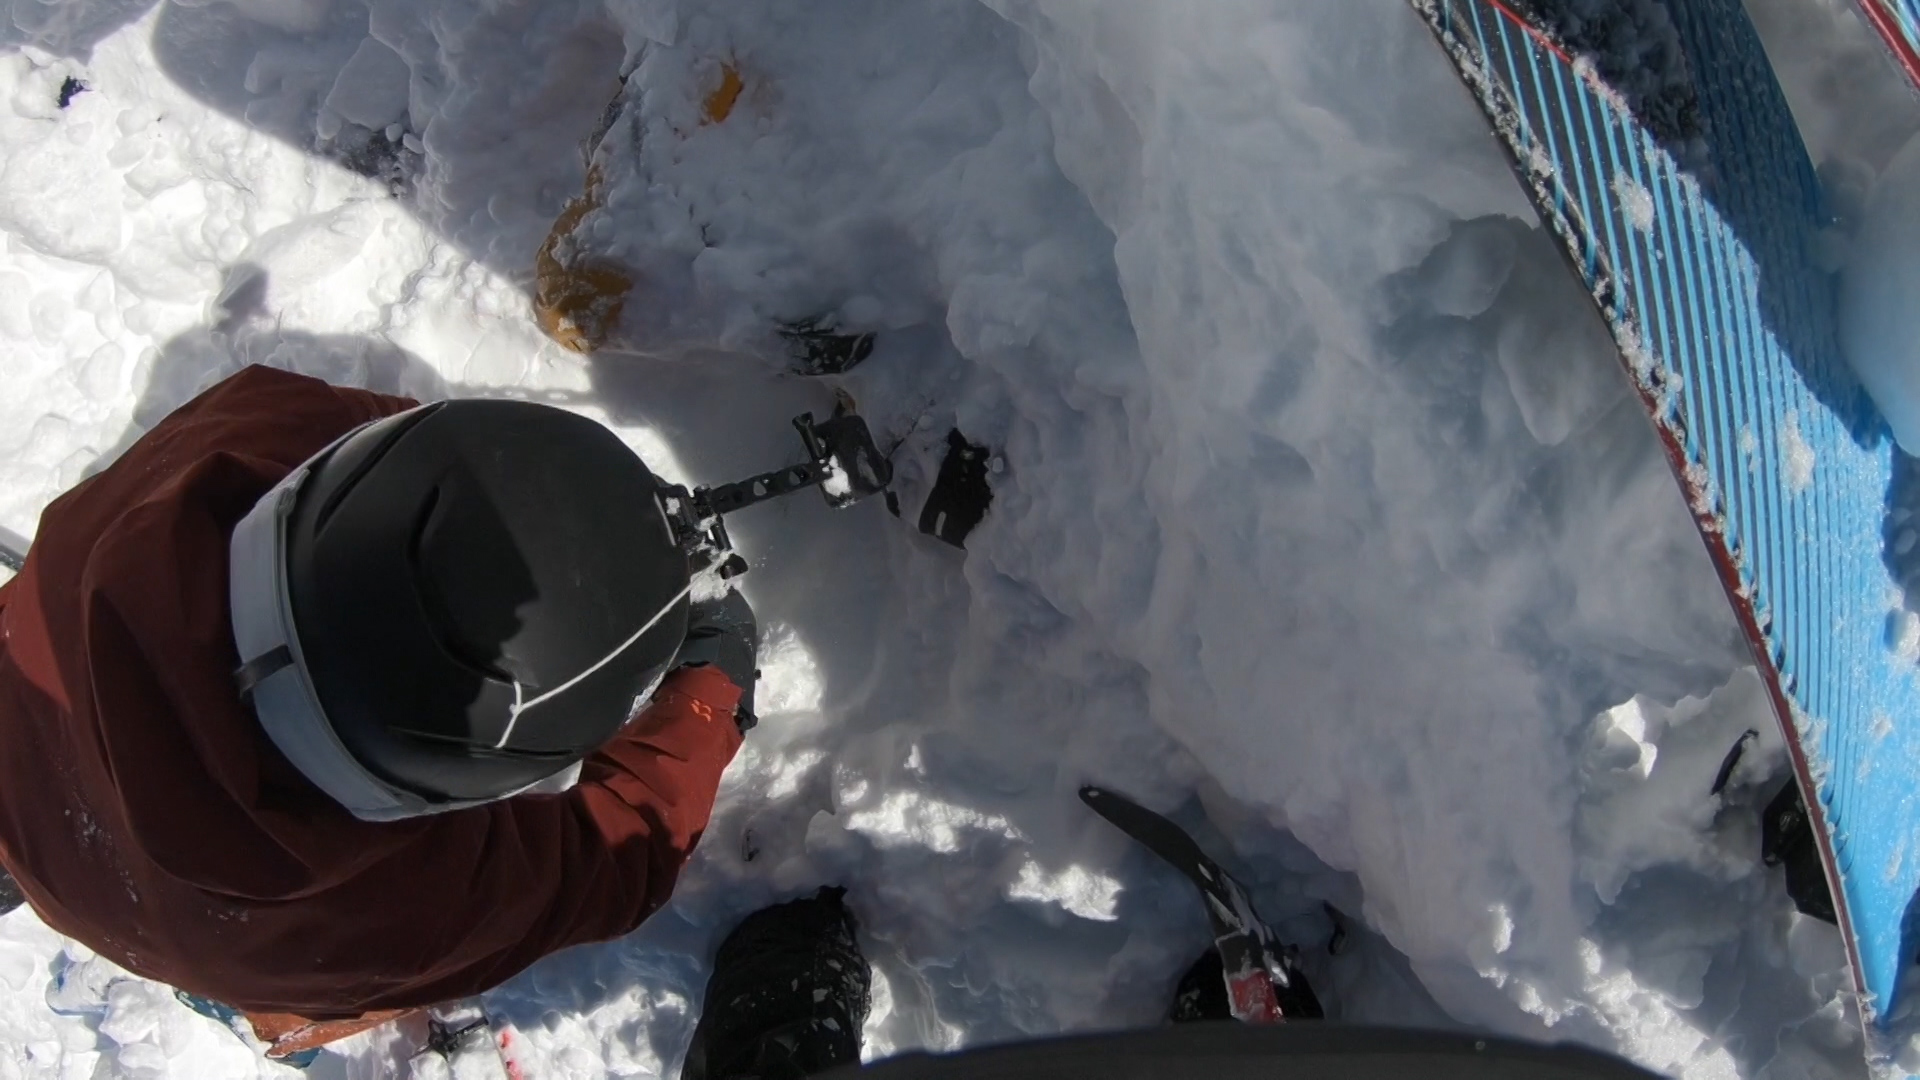 Skier buried under avalanche